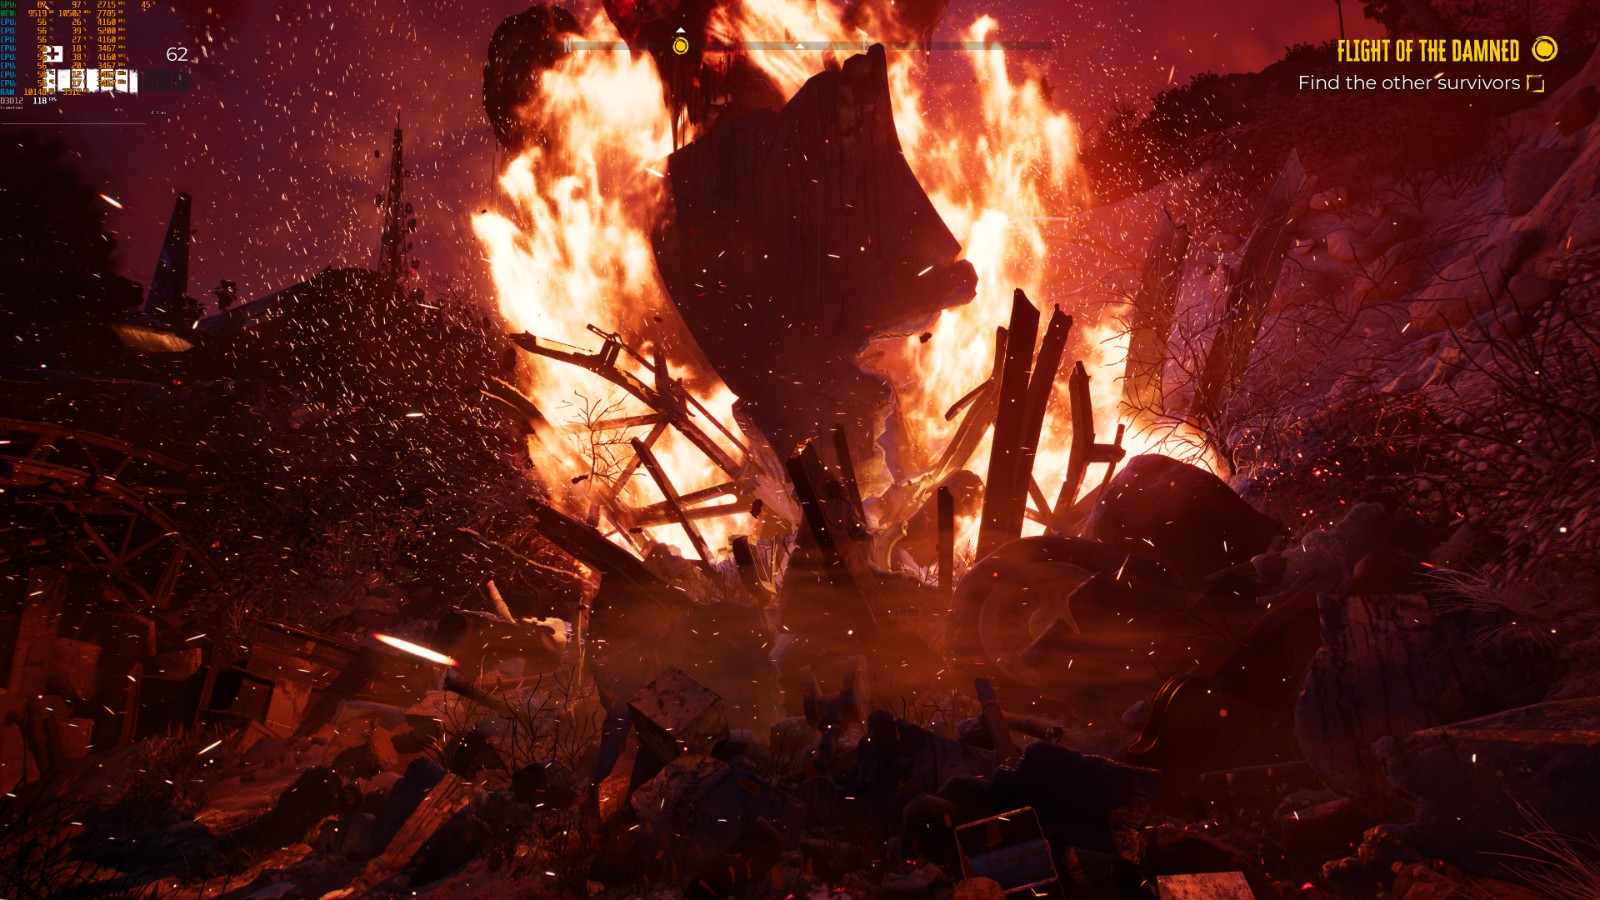 《死亡岛2》全新截图公布 外媒称最好看的PC游戏之一